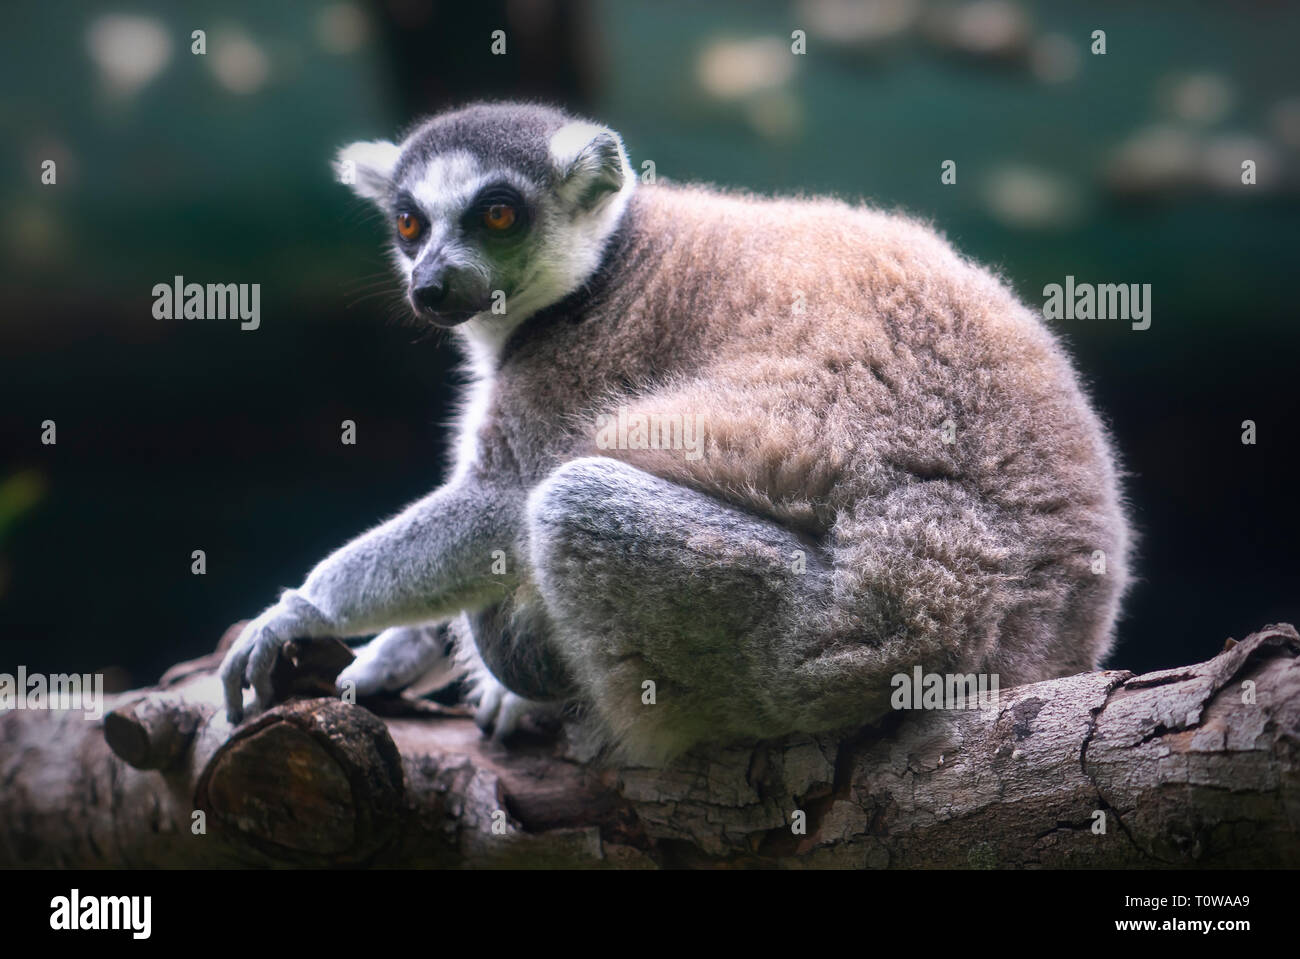 Lemuri in pioggia gli alberi della foresta del Madagascar. Lemuri intervallo di peso da 30 g a 9 kg. La maggior parte di loro mangiare un sacco di frutta e foglie e alcune specie solo mangiare Foto Stock